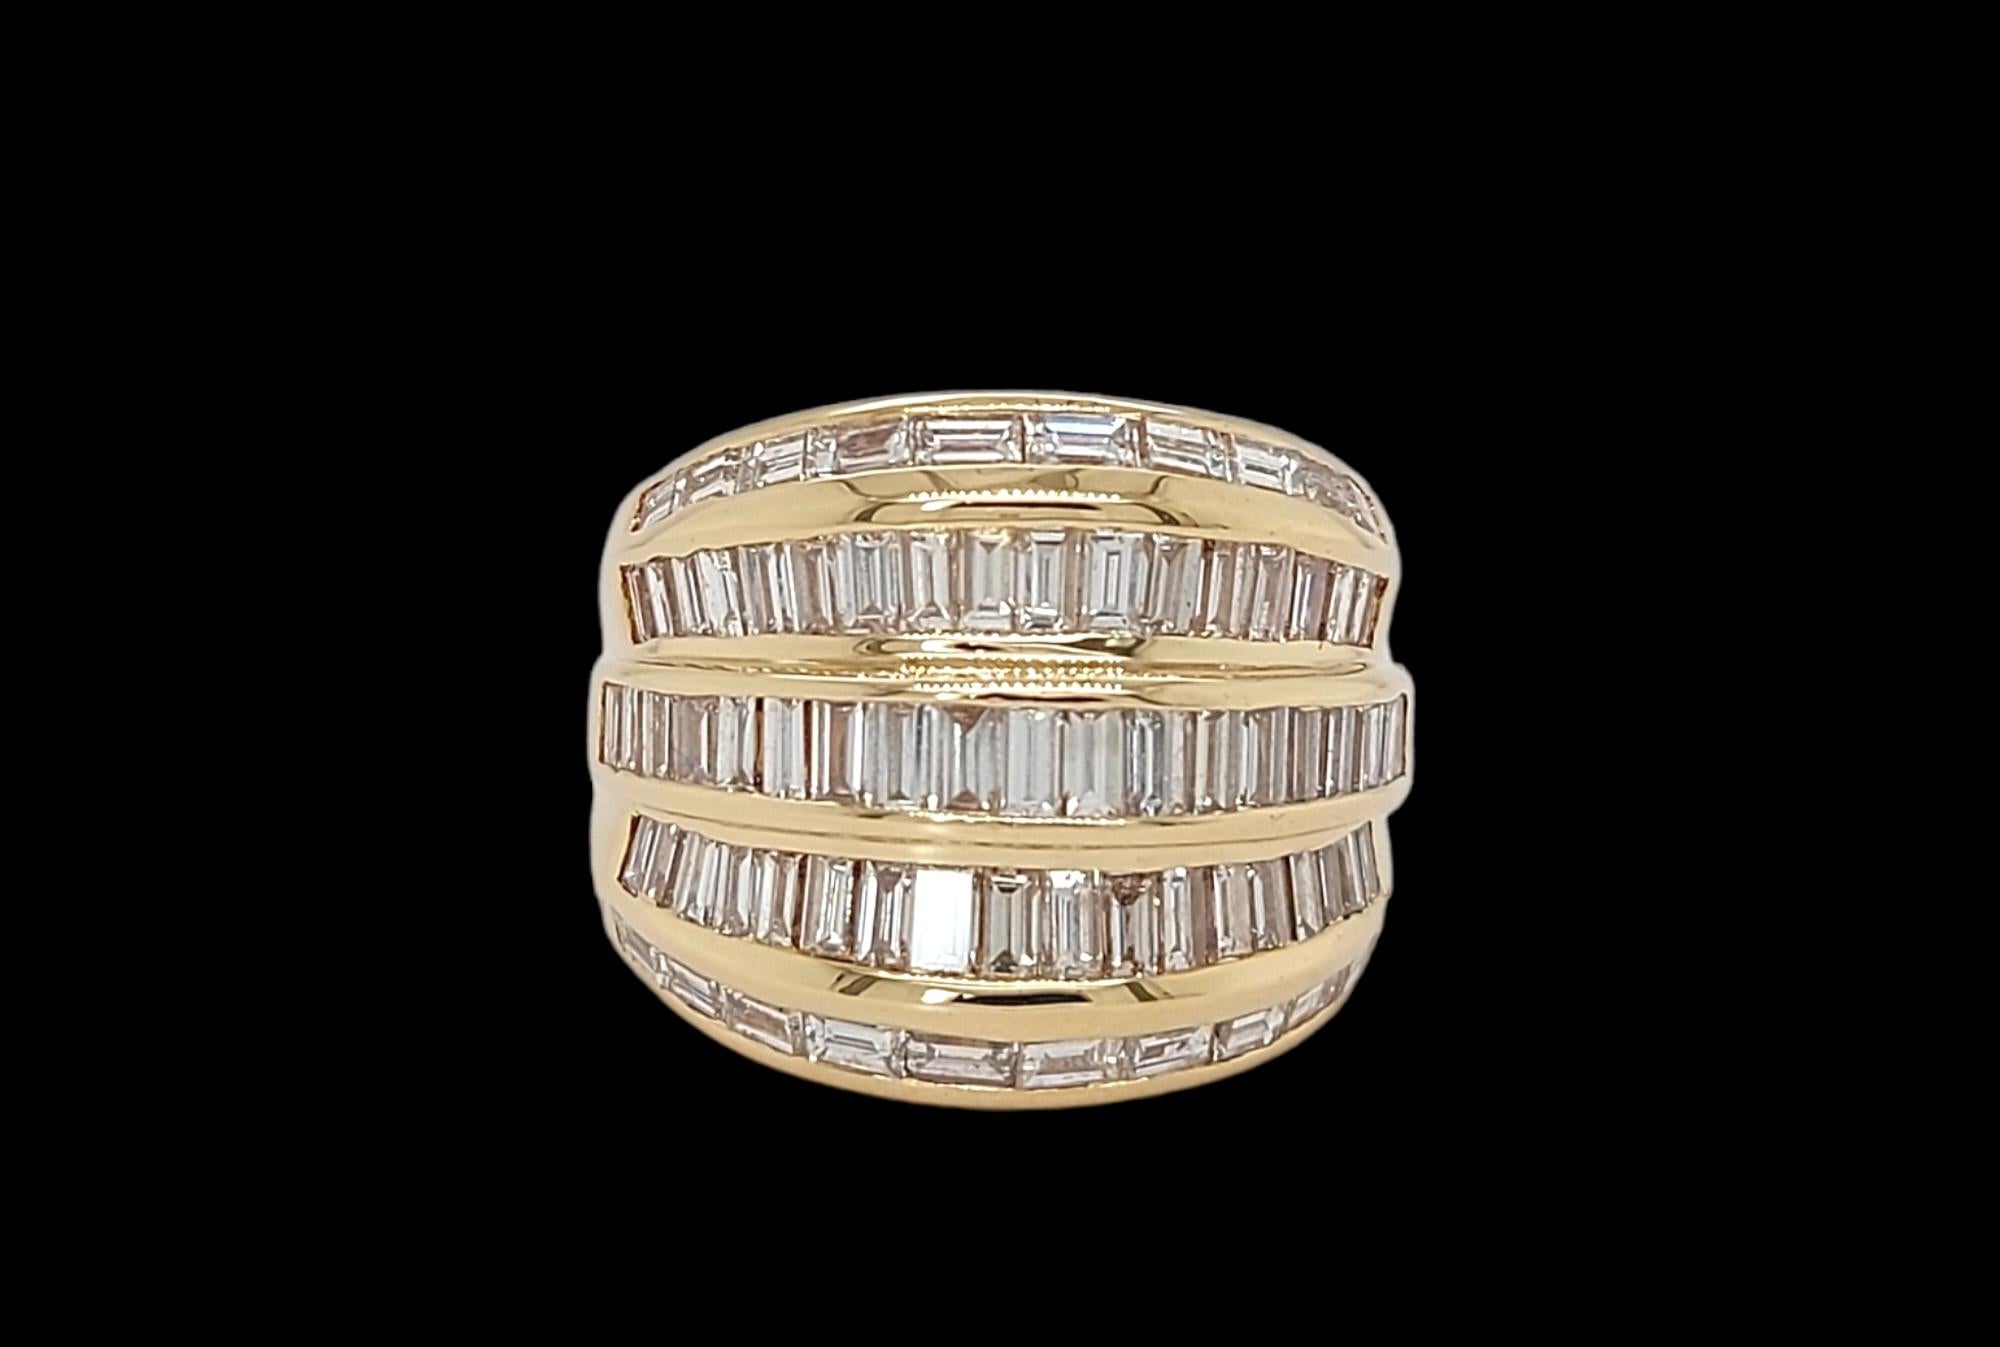 Wunderschöner Ring aus 18kt Gelbgold mit 4ct Diamanten im Baguetteschliff, Nachlass Seine Majestät der Sultan von Oman Qaboos Bin Said

Kann zu Artikel hinzugefügt werden  LU1752218845402 oder Artikel LU1752218608042

Diamanten: Diamanten im